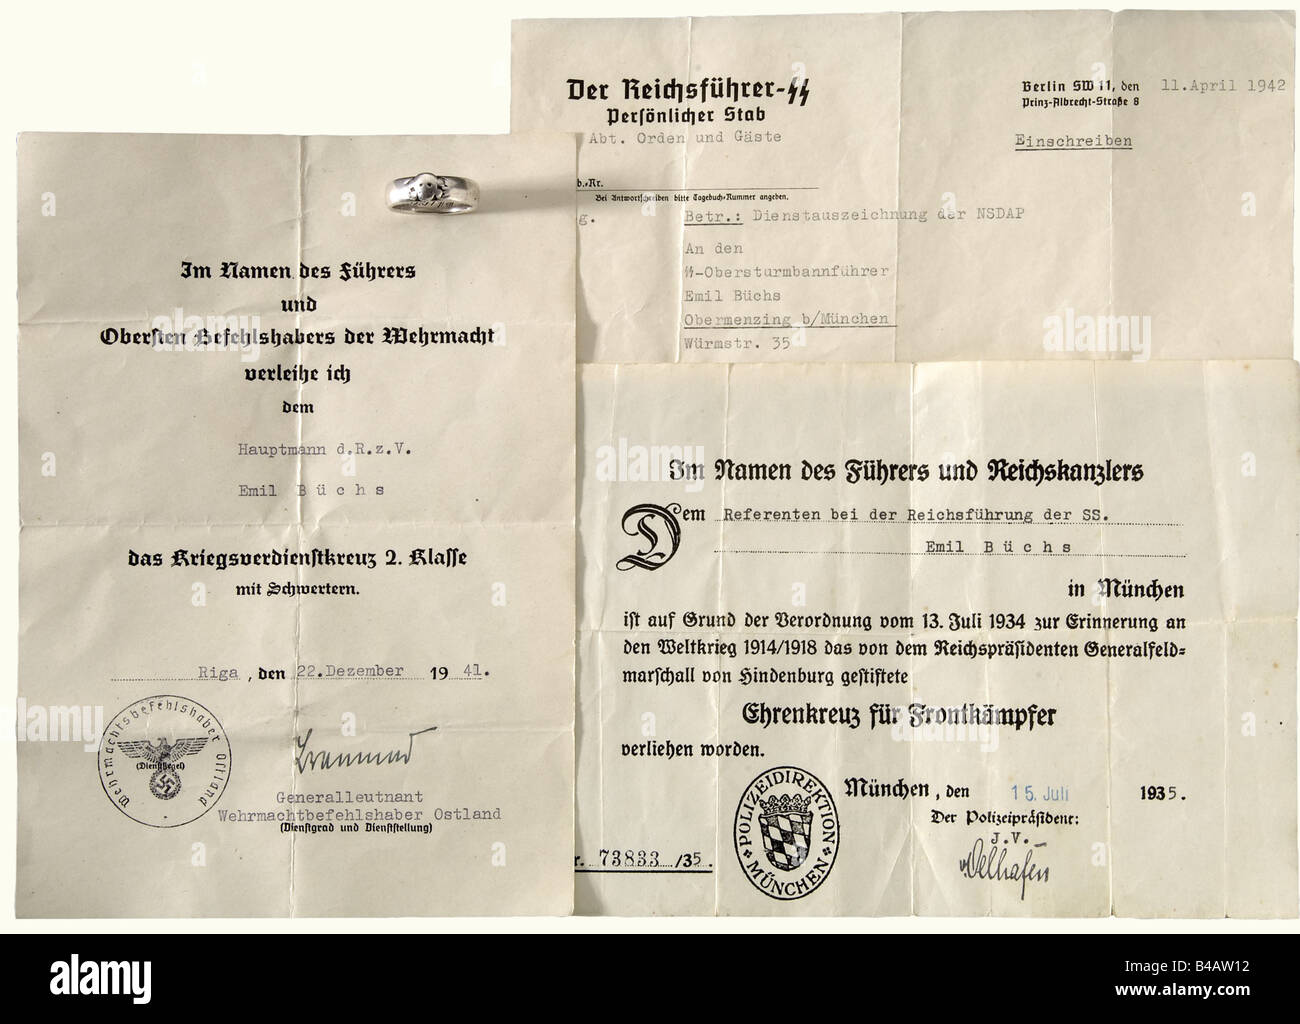 SS-Obersturmbannführer Emil-Büchs - SS-Totenkopfring, und drei Dokumente. Der Ring ist glatt getragen, mit identifizierbarem überlagerten Kopf Des Todes und der gravierten Widmungsbeschriftung S.lb. Büchs 30.6.34 H. Himmler'. Darin enthalten sind die Auszeichnungsdokumente für das Ehrenkreuz für Frontkämpfer 1935 an die "Referenten bei der Reichssatzung der SS" ('Berater der SS-Führung des Reichs') Und das Kriegsverdienstkreuz 2. Klasse mit Schwertern 1941 mit Unterschrift unter Dem Major General und dem Kommandeur der Wehrmacht im Osten Walter Braemers sowie dem Übermittlungsbrief, Stockfoto